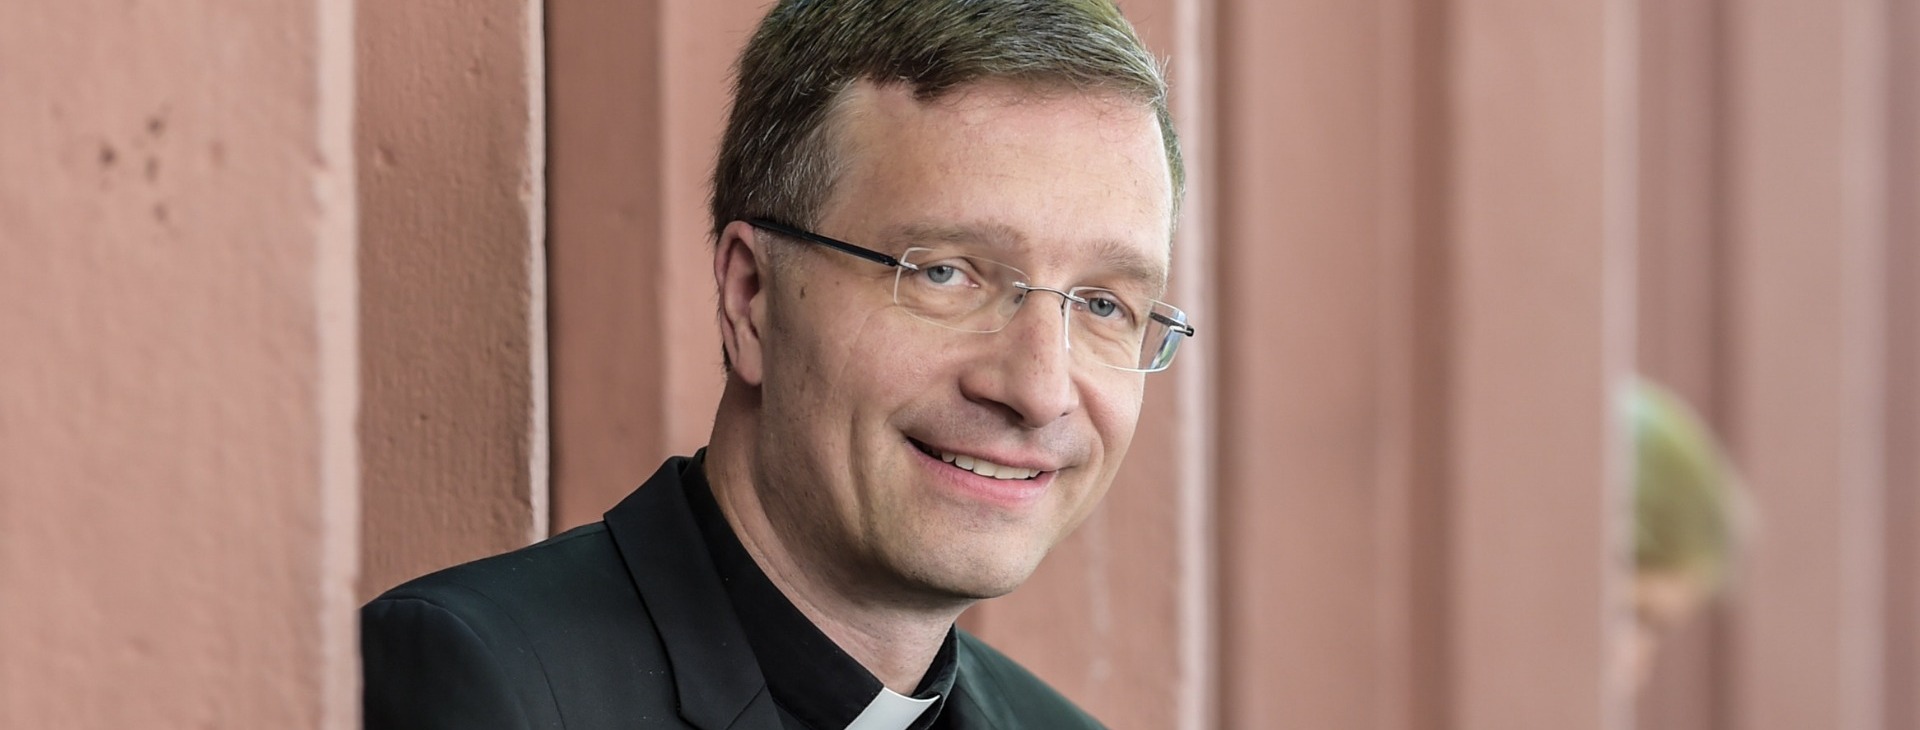 Dr. Michael Gerber, Weihbischof im Bistum Freiburg, wird neuen Bischof von Fulda